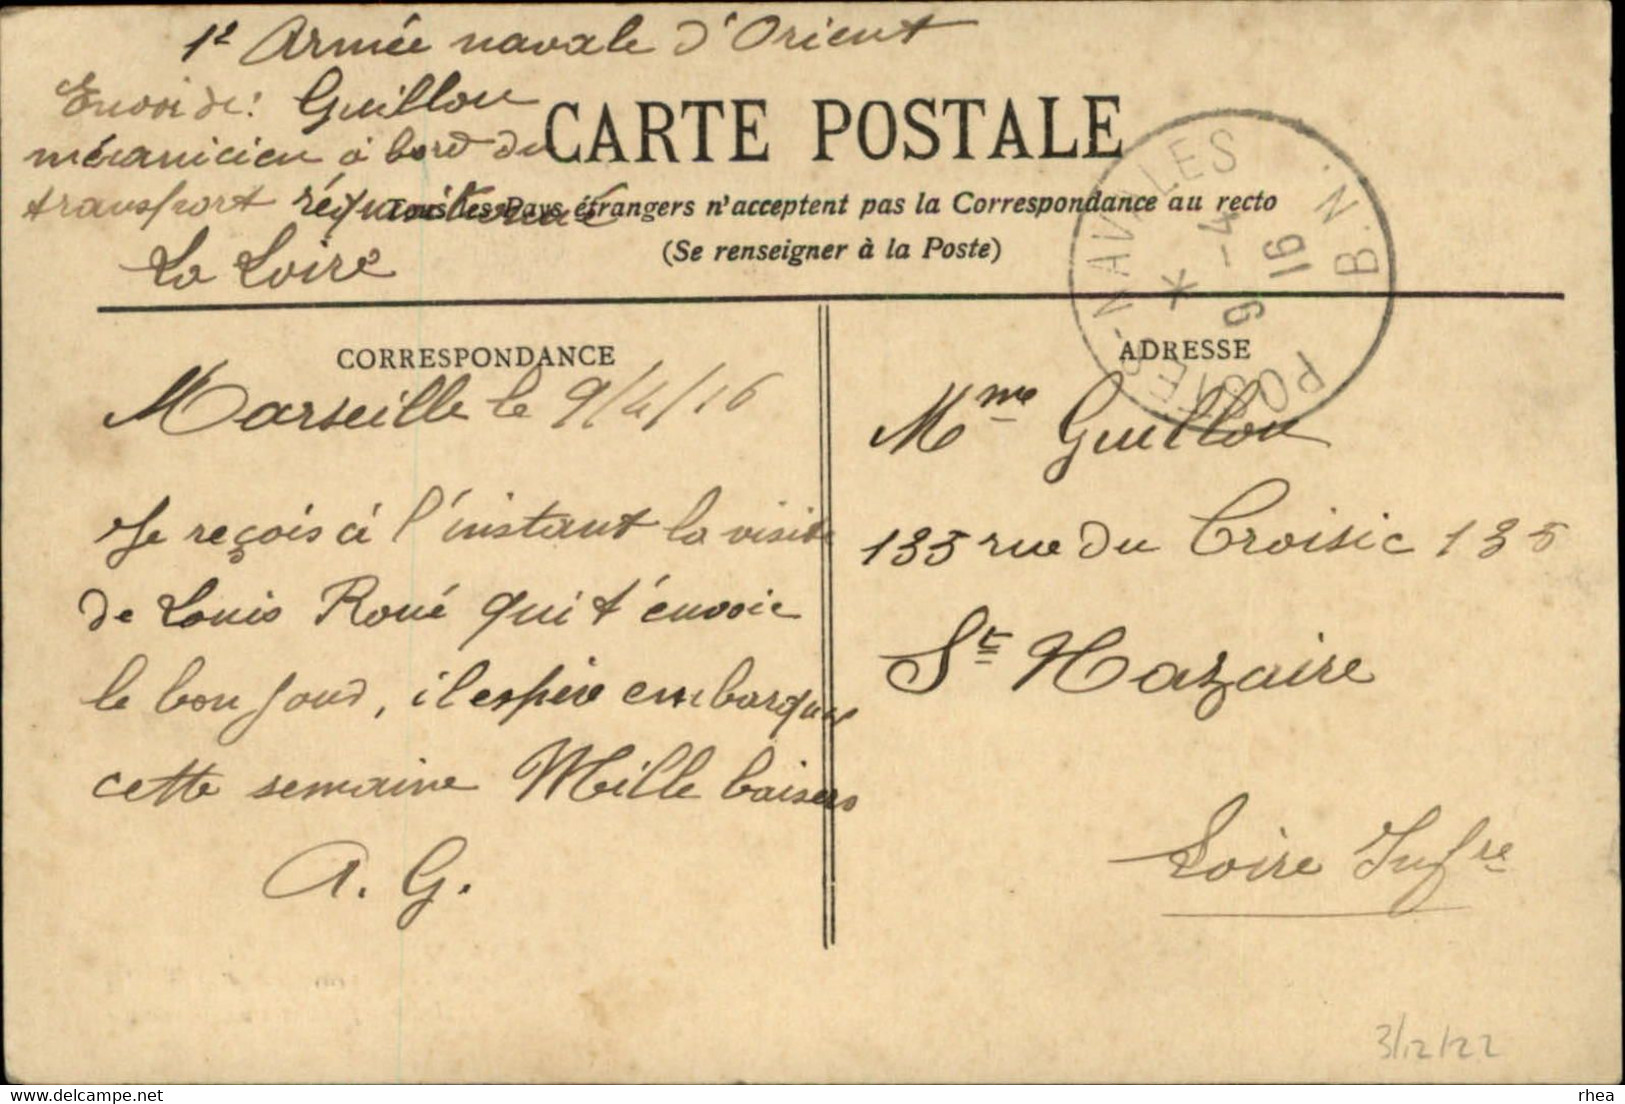 ALGERIE - Arabes Jouant Aux Dames, Jeu De Dames, Damier, Cachet Postes Navales B. N. 1916, Bateau Réquisitionné La Loire - Scenes